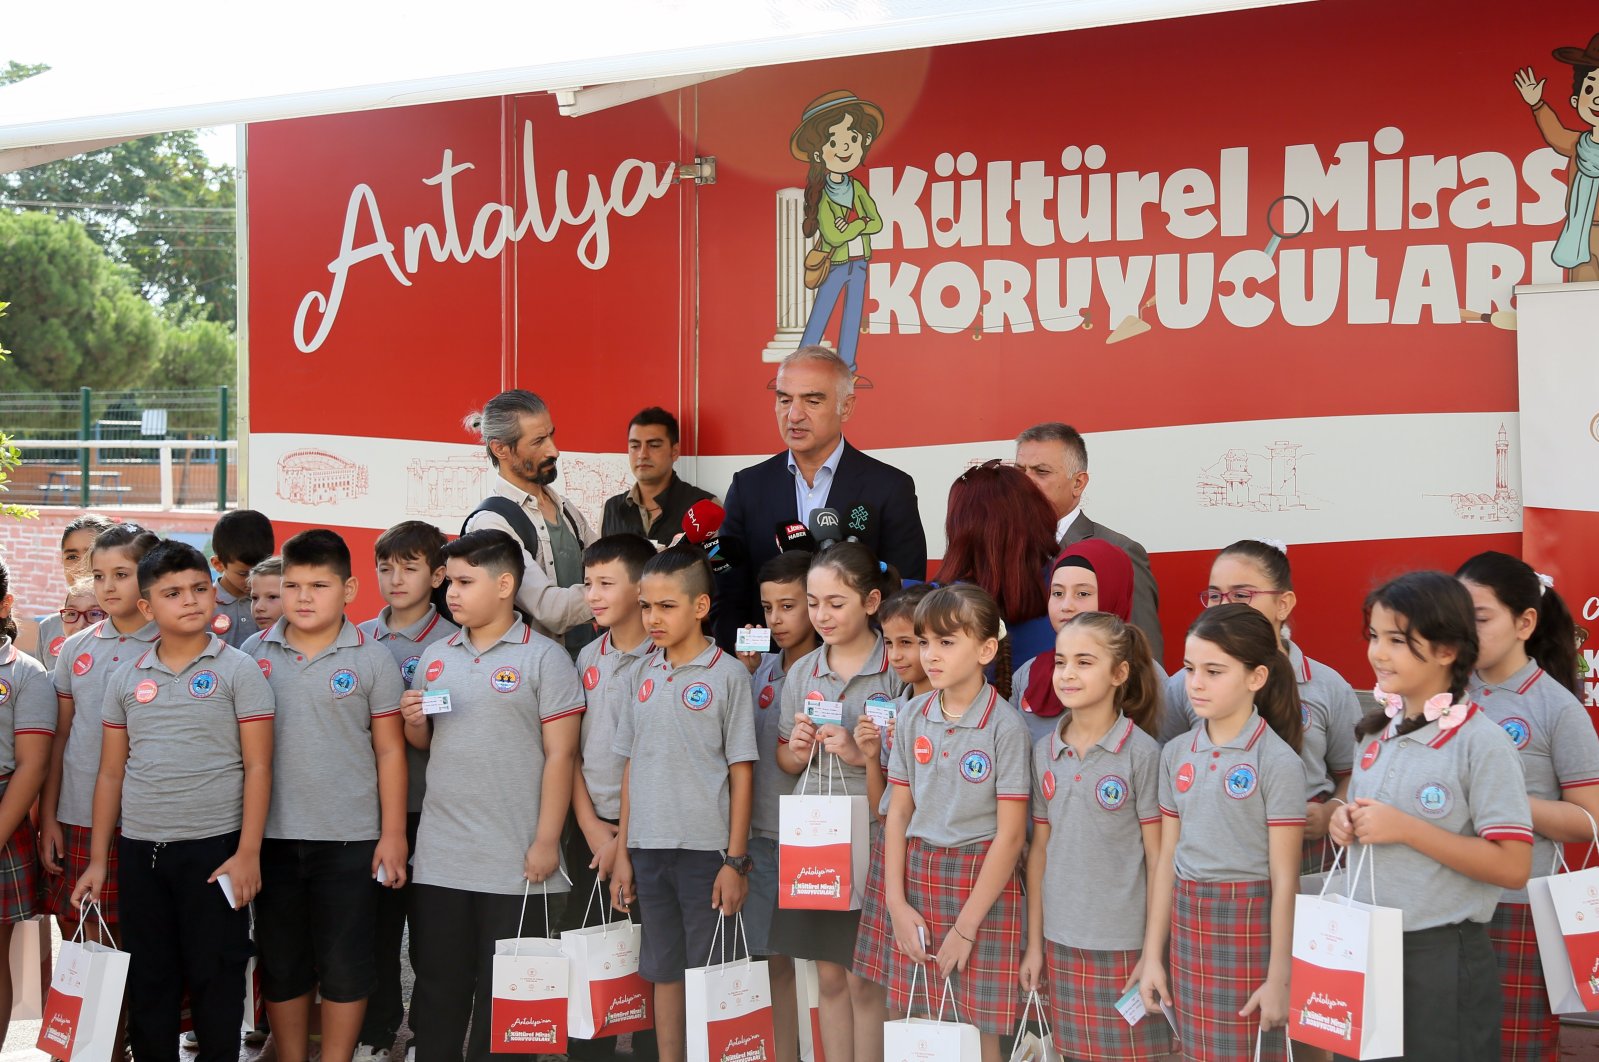 Kementerian Kebudayaan Türkiye meluncurkan proyek pemuda untuk melindungi warisan